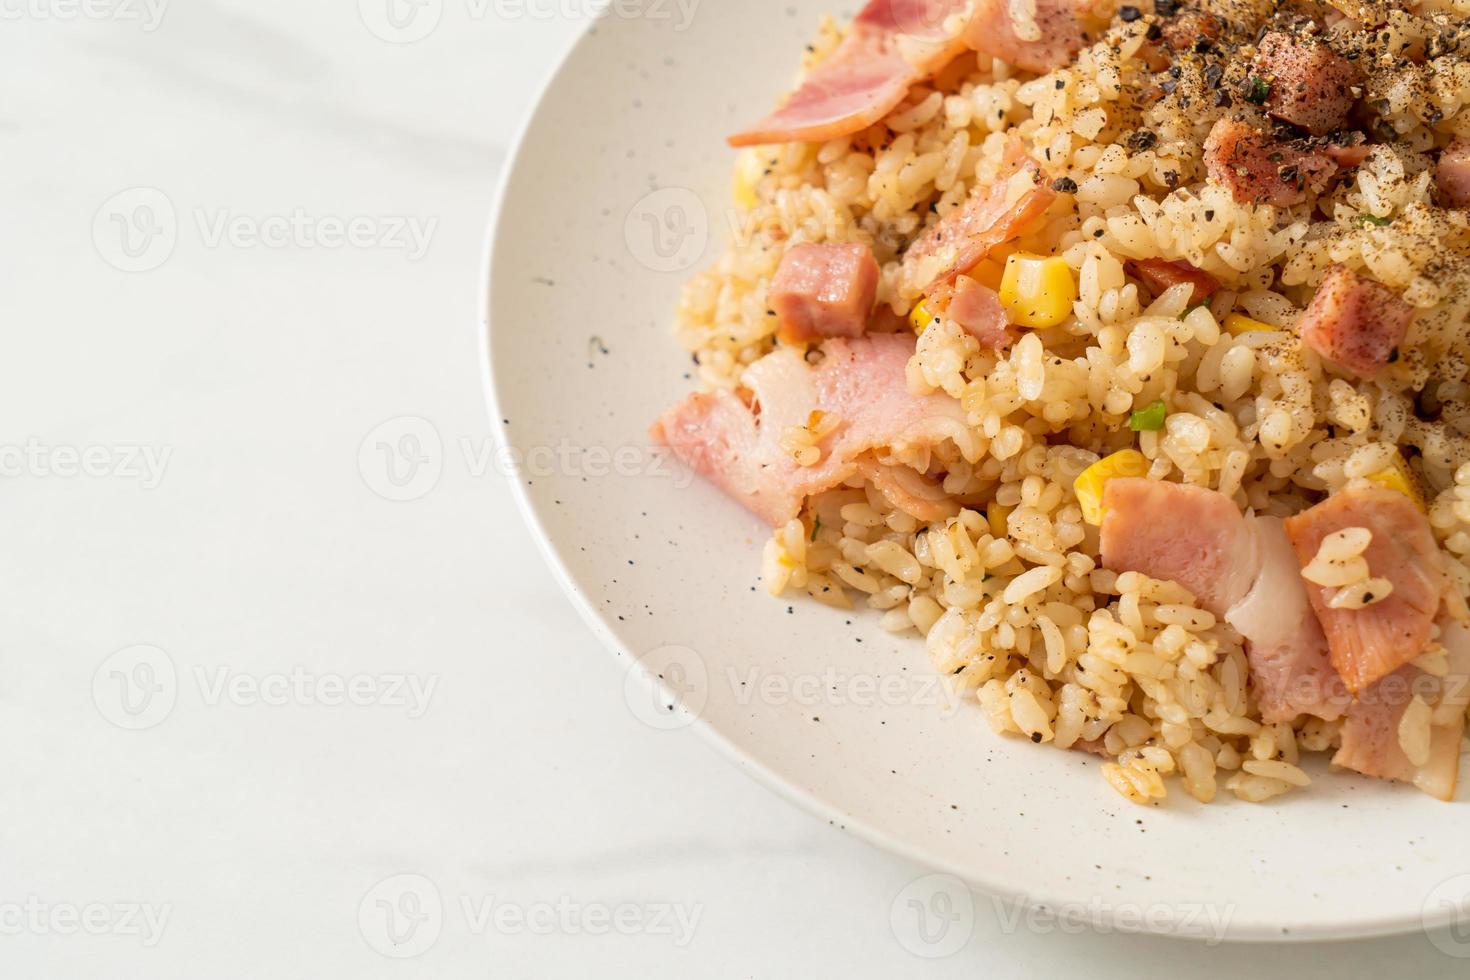 arroz frito com presunto de bacon e pimentão preto foto